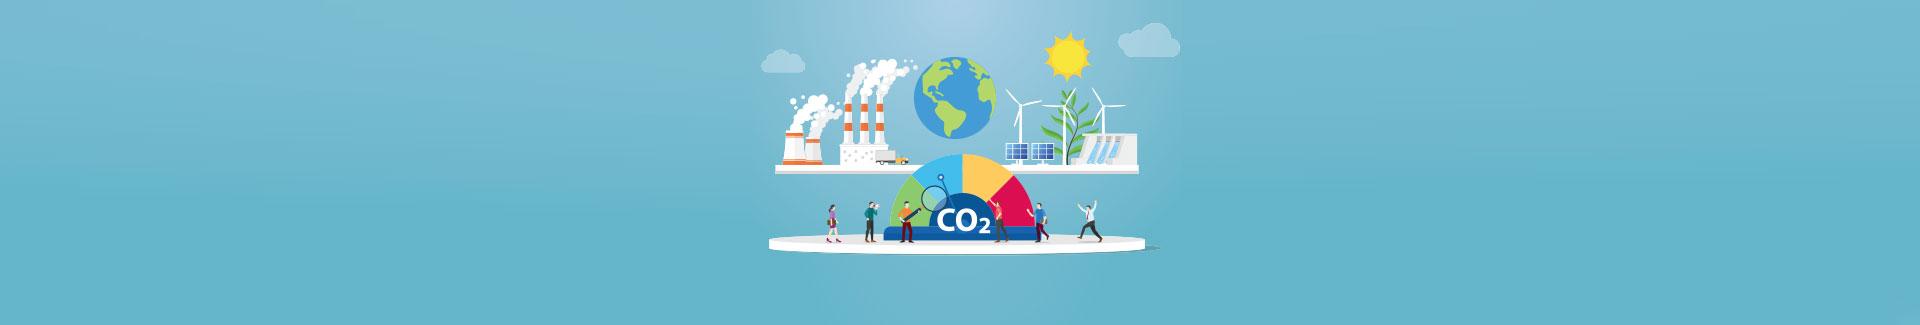 Bannière bilan carbone - illustration du cycle du carbone sur la Terre